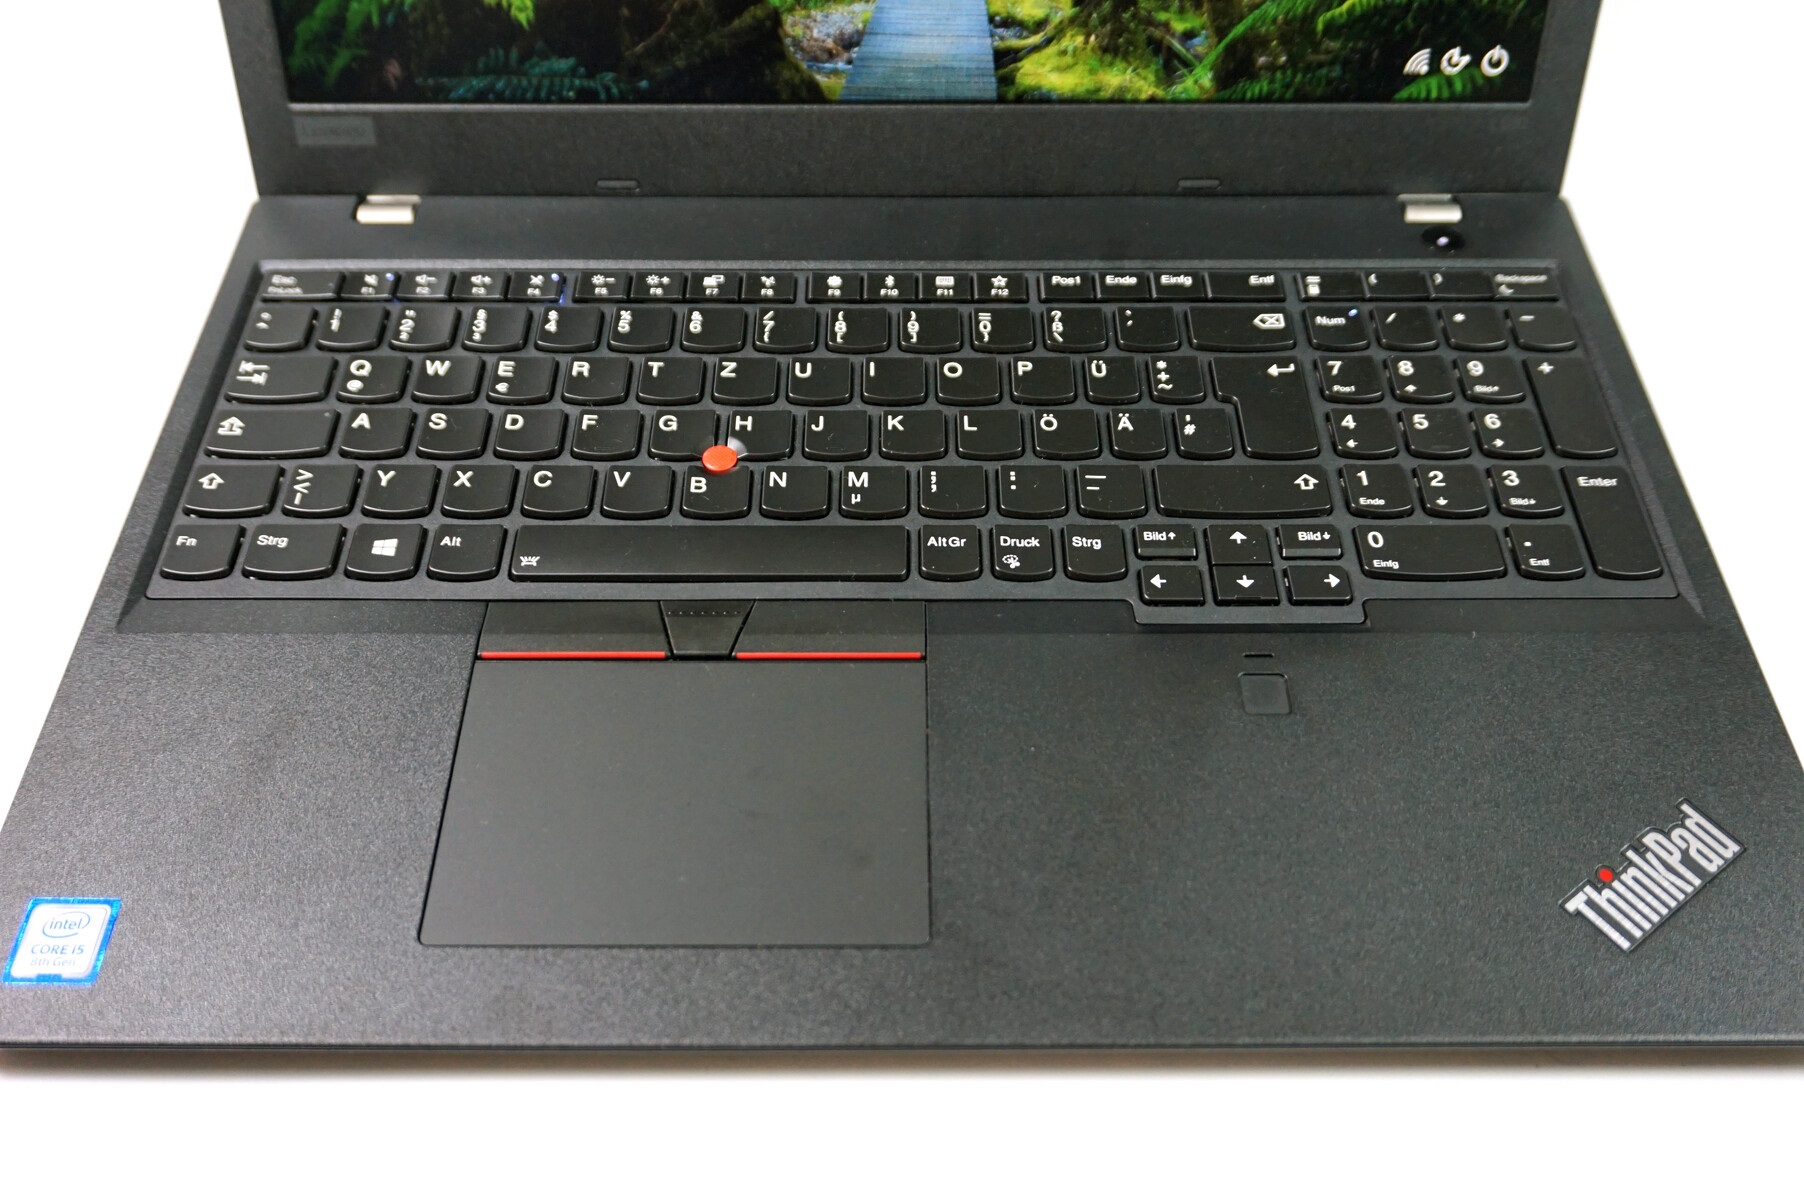 Đánh giá Lenovo ThinkPad L580: Cải tiến mạnh mẽ so với thế hệ cũ !, chuyên trang tư vấn laptop